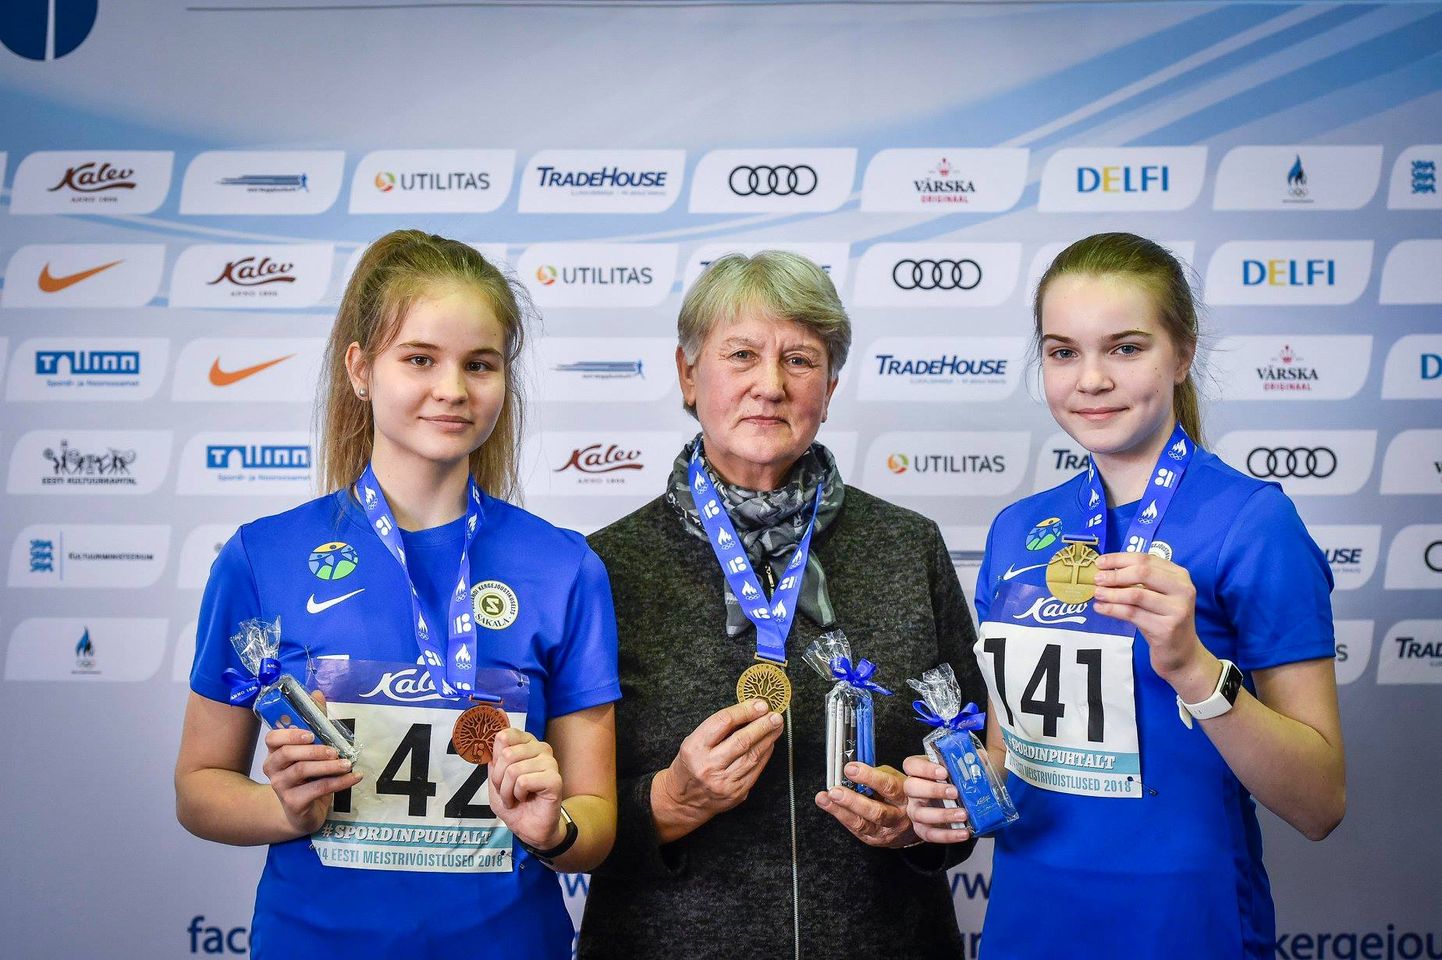 Treener Milvi Varese õpilased teenisid Eesti noorte meistrivõistlustel U-14 vanuseklassi tütarlaste kuulitõukes kaks medalit: Gerli Endrekson (paremal) võitis kulla ja Helene Metsmaa (vasakul) pronksi.